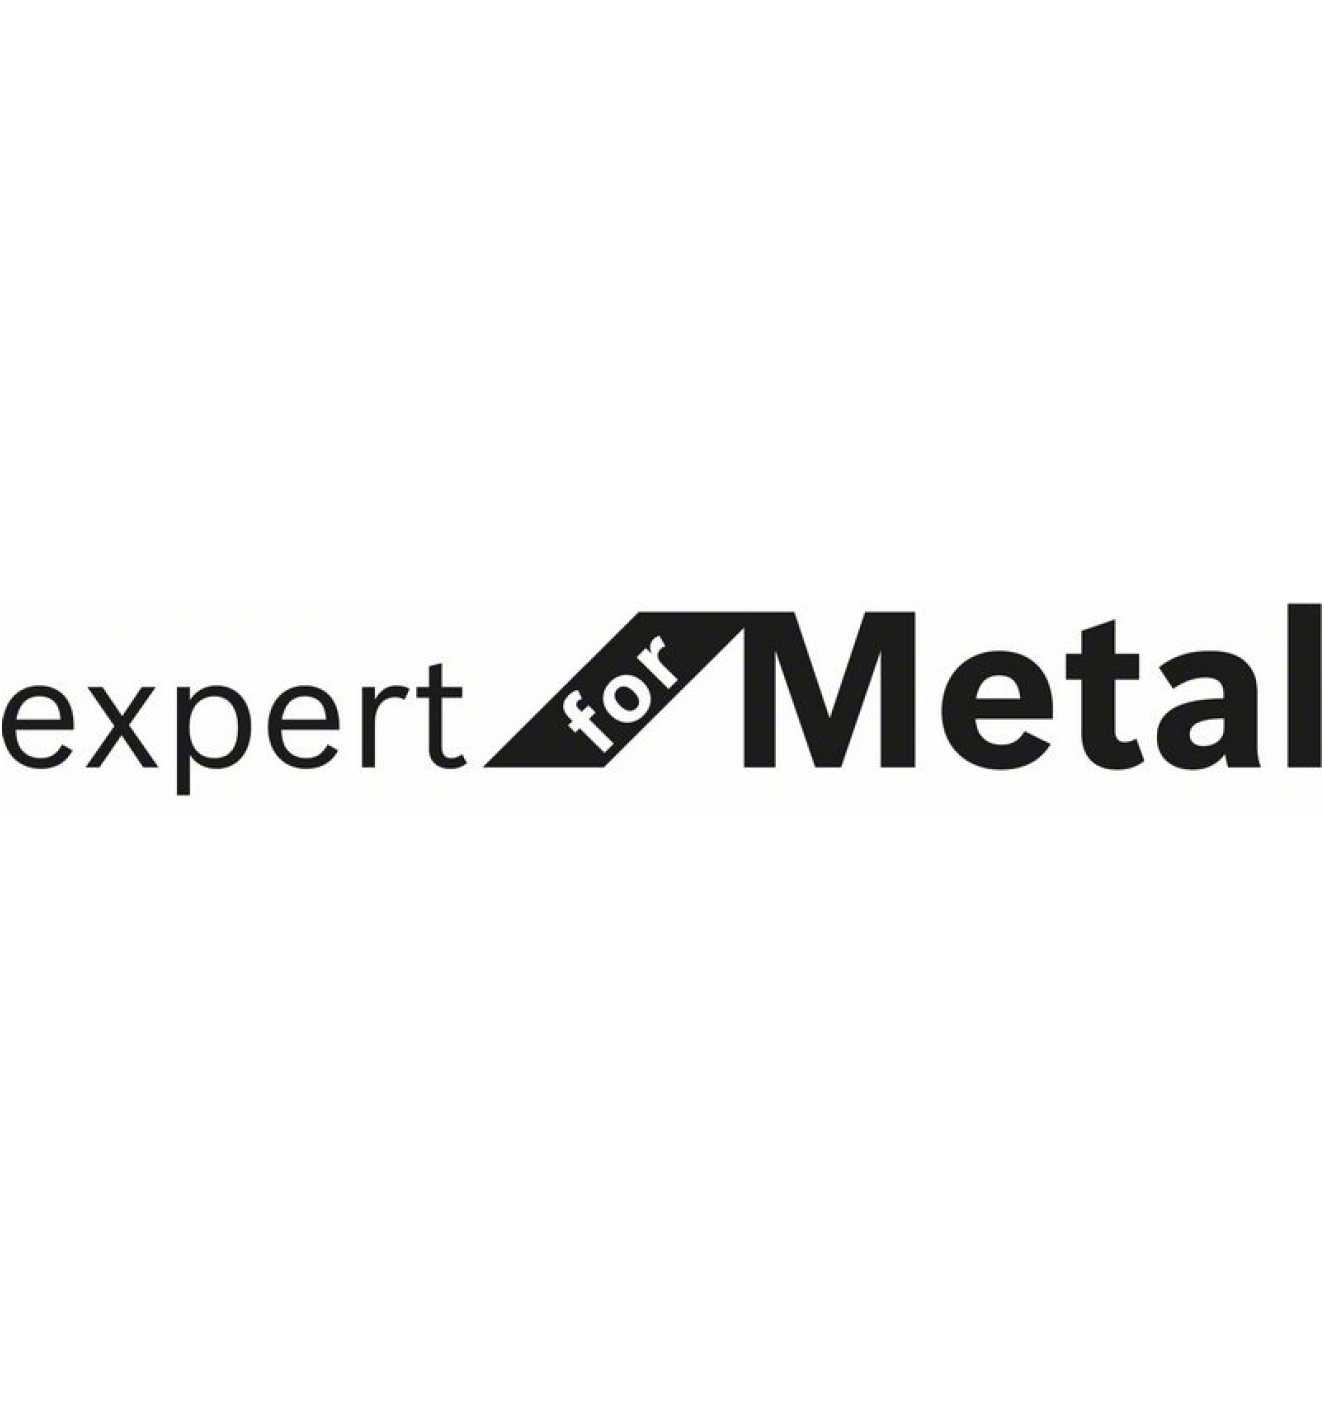 46 for 230 mm, T Trennscheibe online - bei Rapido kaufen Expert Metal, gerade mm Reidl.de AS 1,9 Bosch BF,